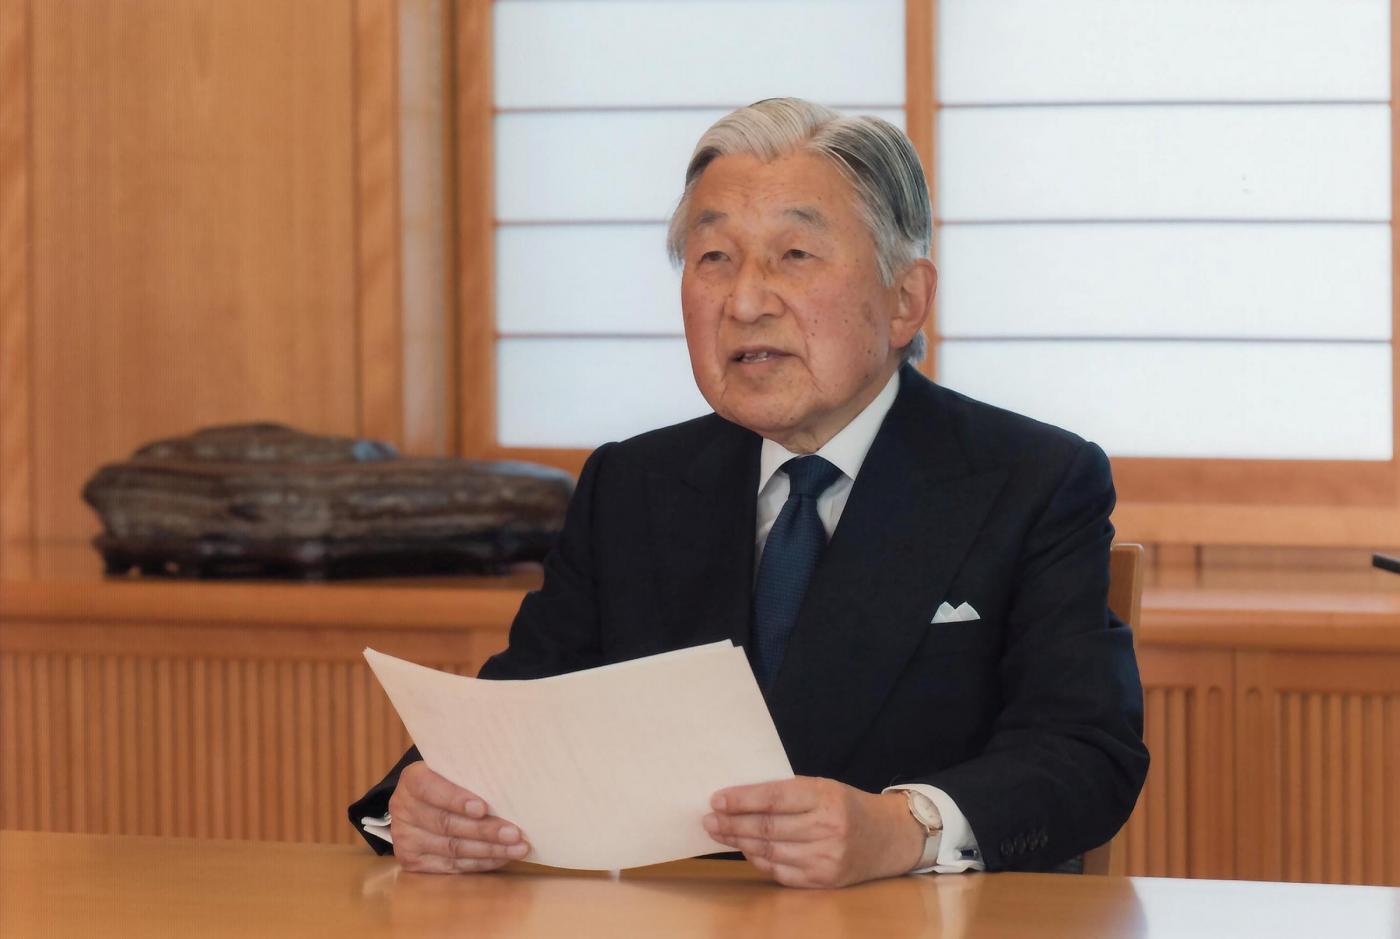 imperatore Akihito